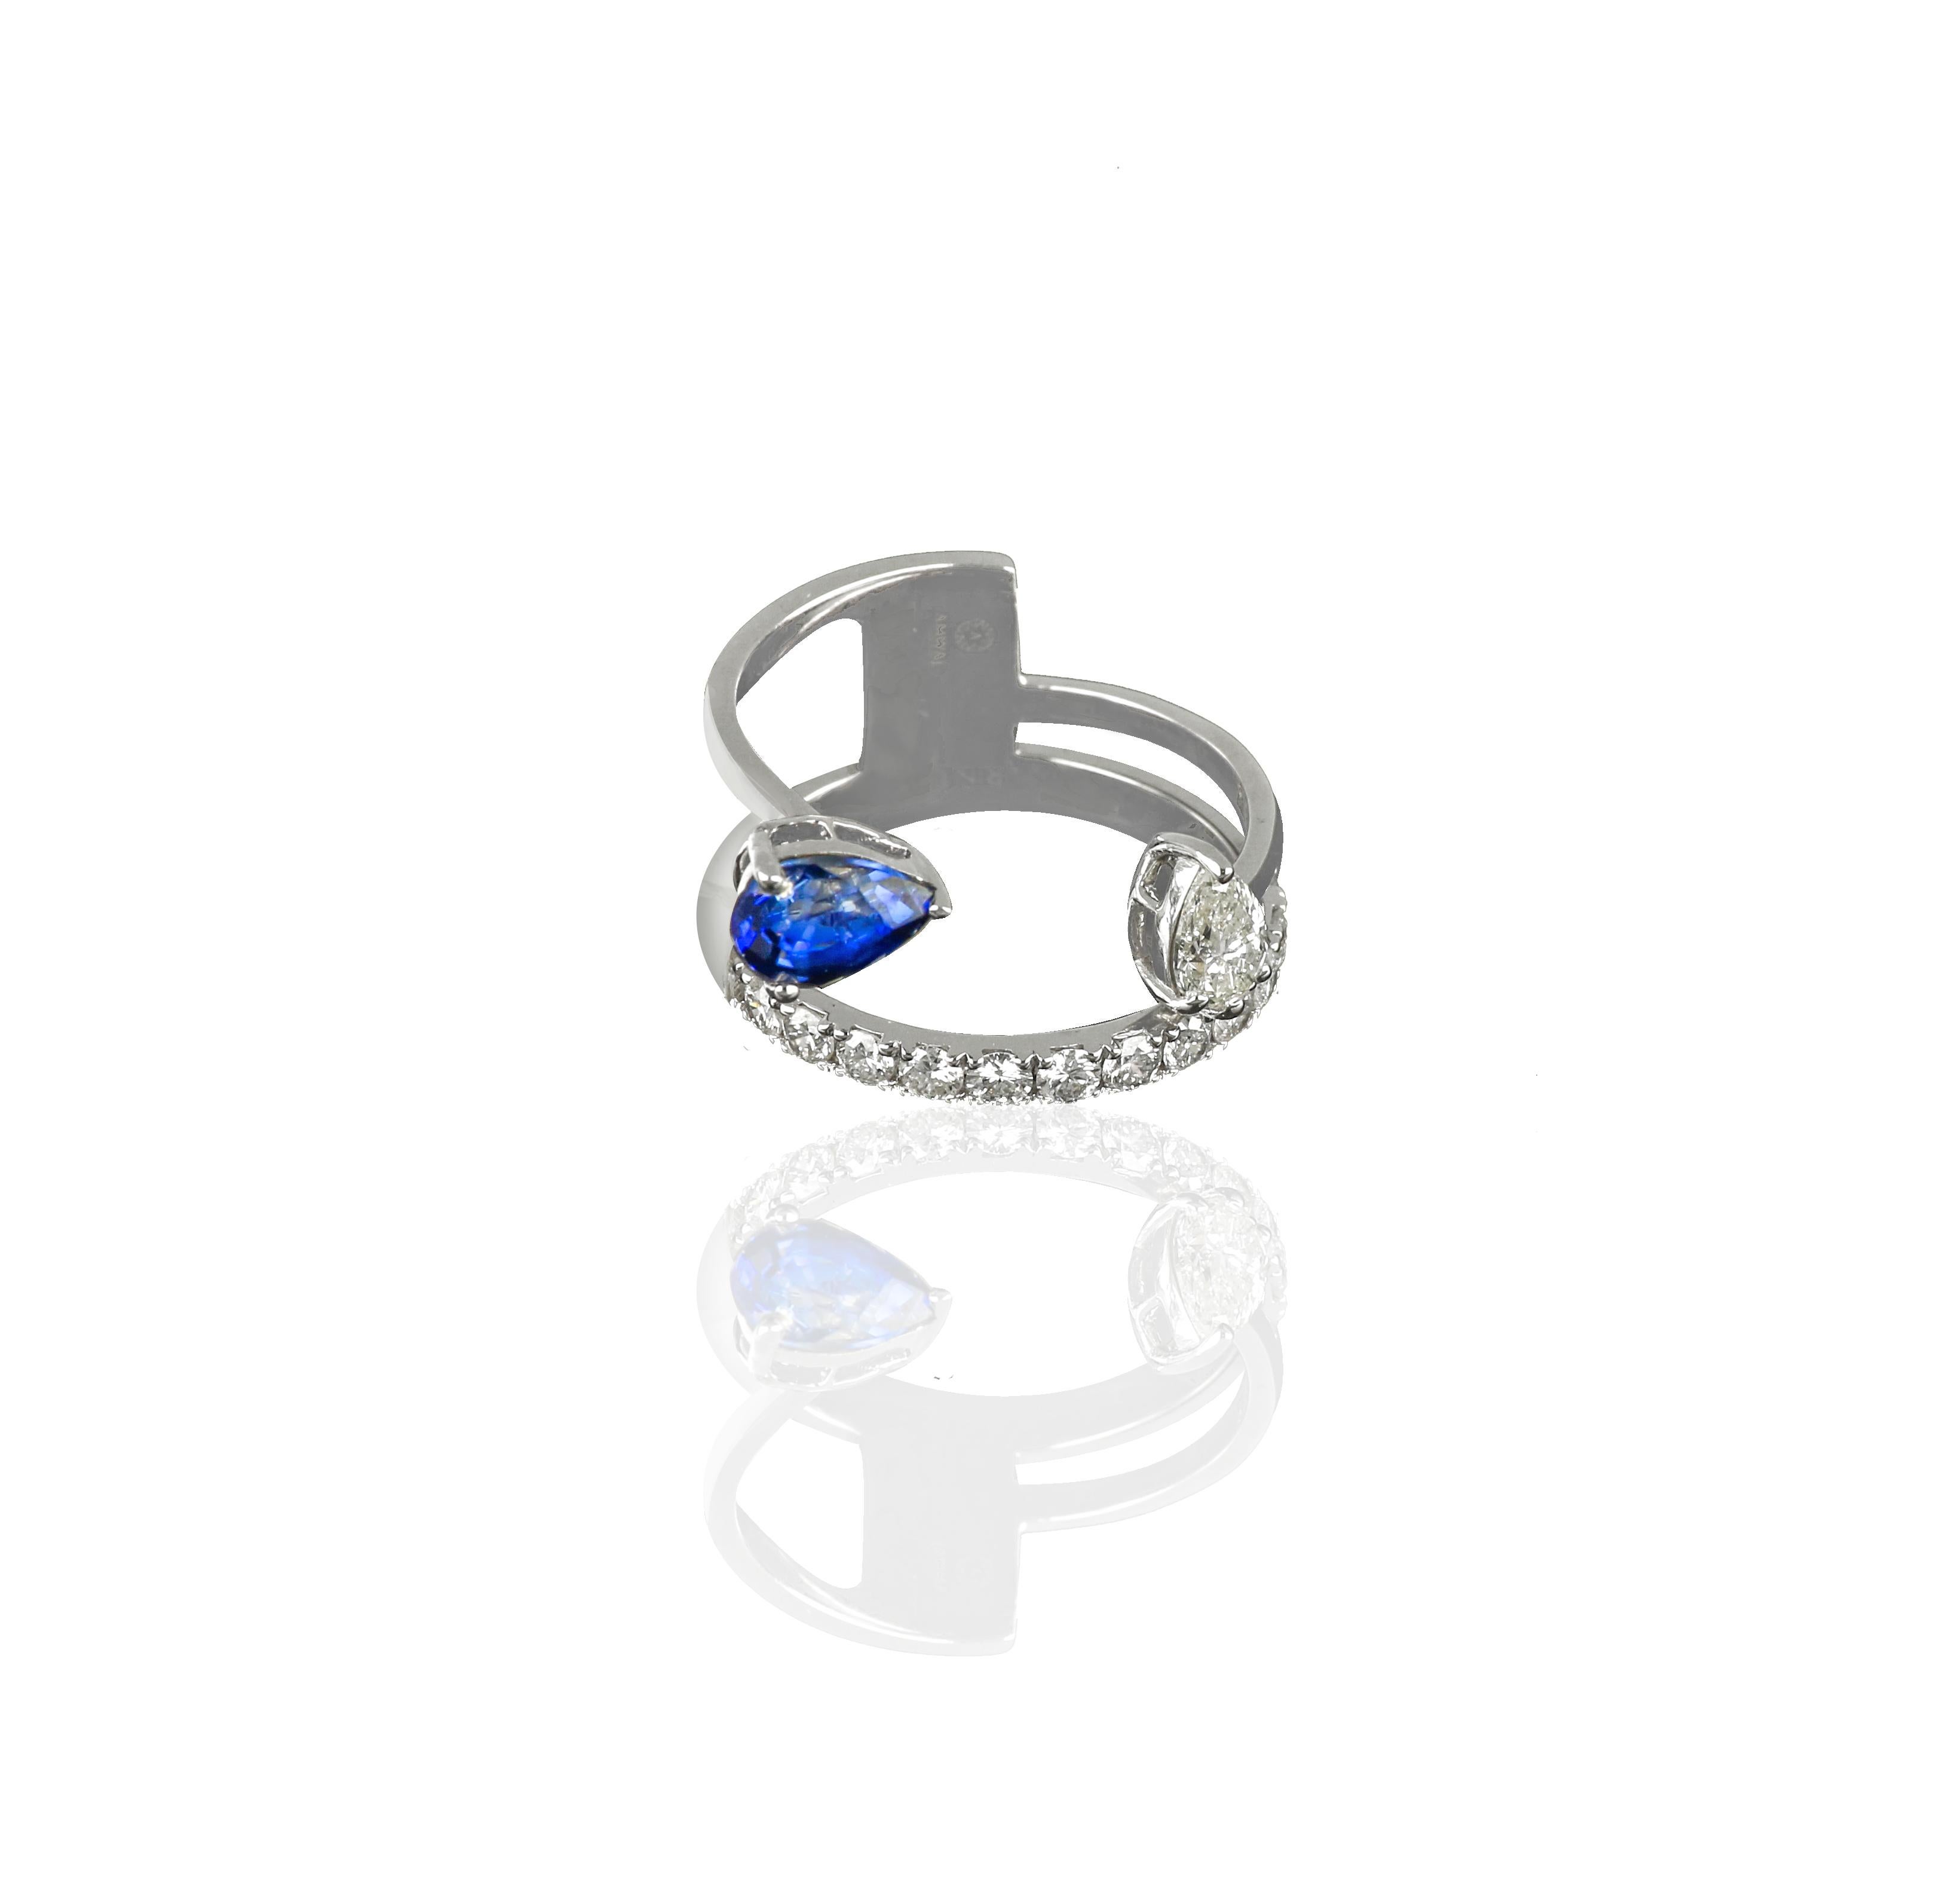 Das Wraparound-Design dieses Rings aus 18 Karat Weißgold verleiht diesem klassischen Ringstil eine frische Modernität. Eine Reihe kleiner runder Diamanten umkreist den Finger, gefasst mit einem Paar eleganter birnenförmiger Diamanten, denen ein 0,87